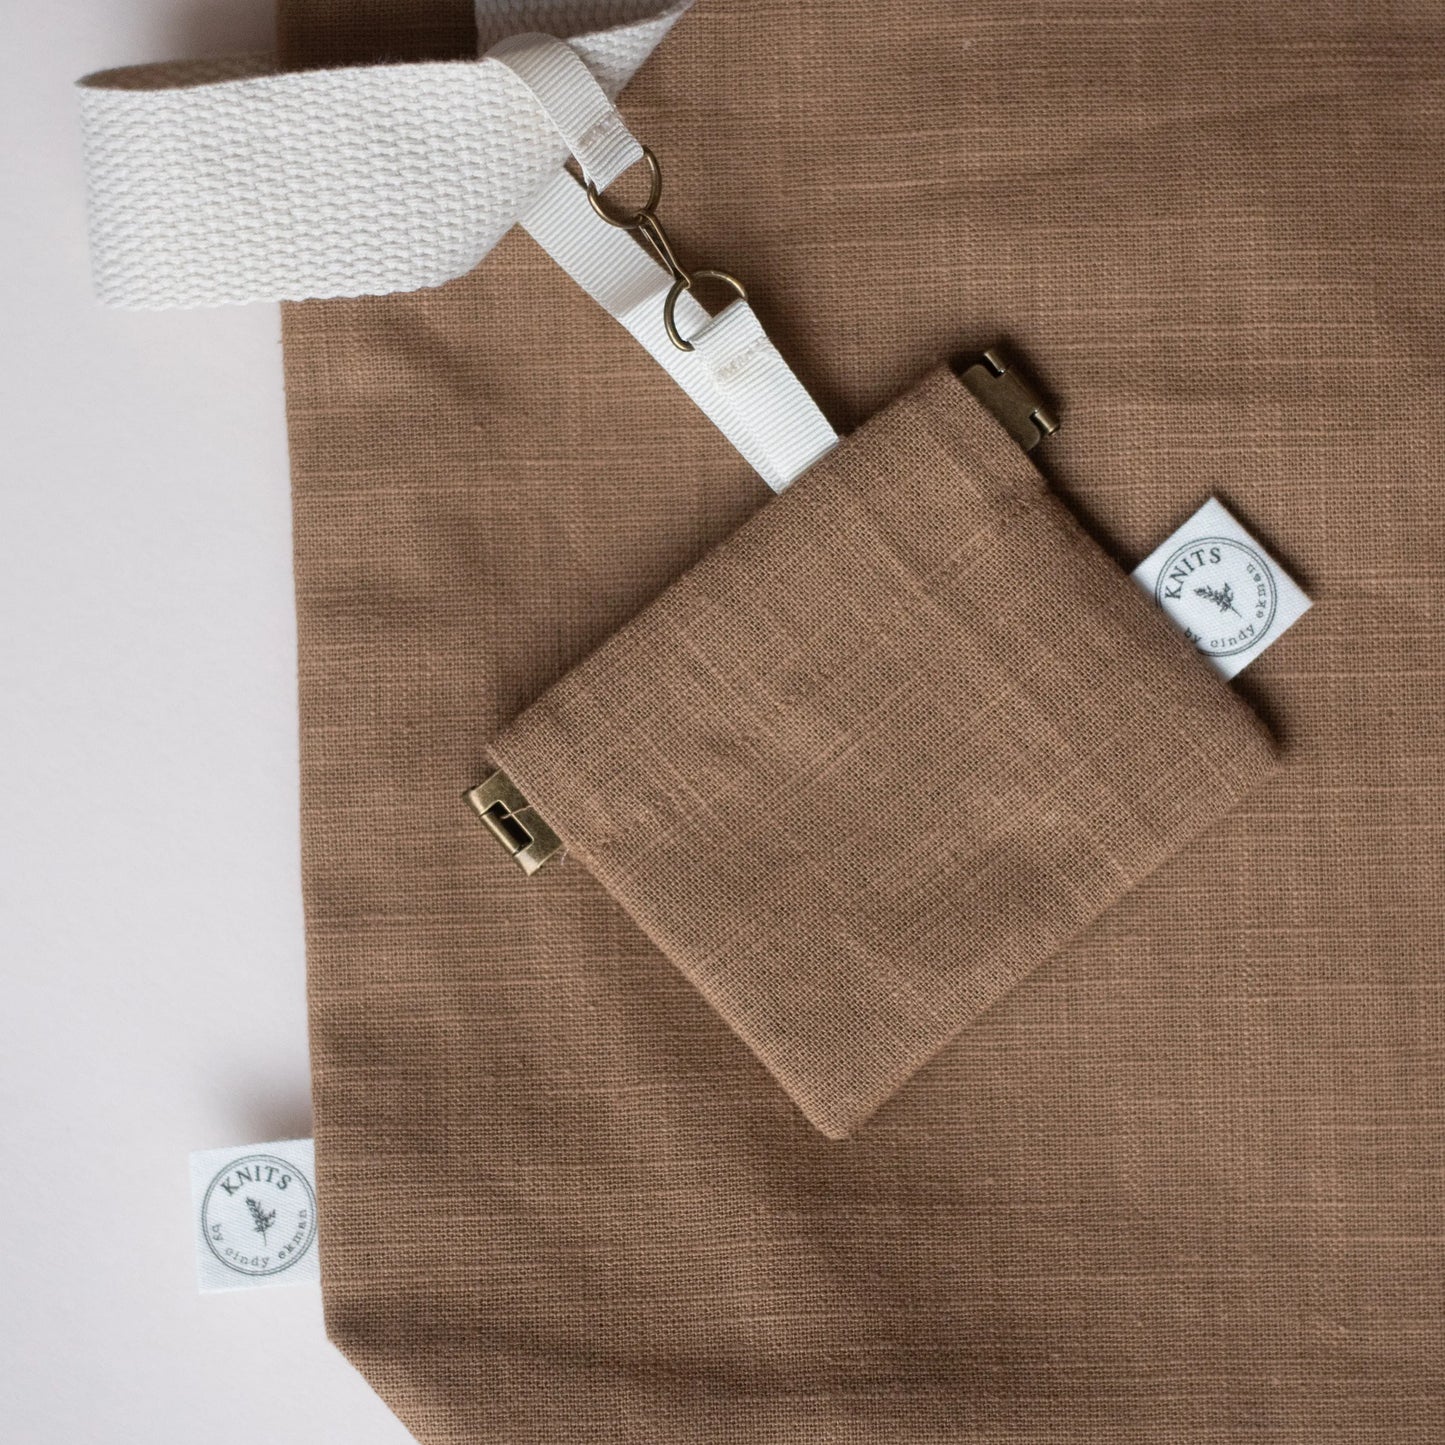 brown knitting notion bag